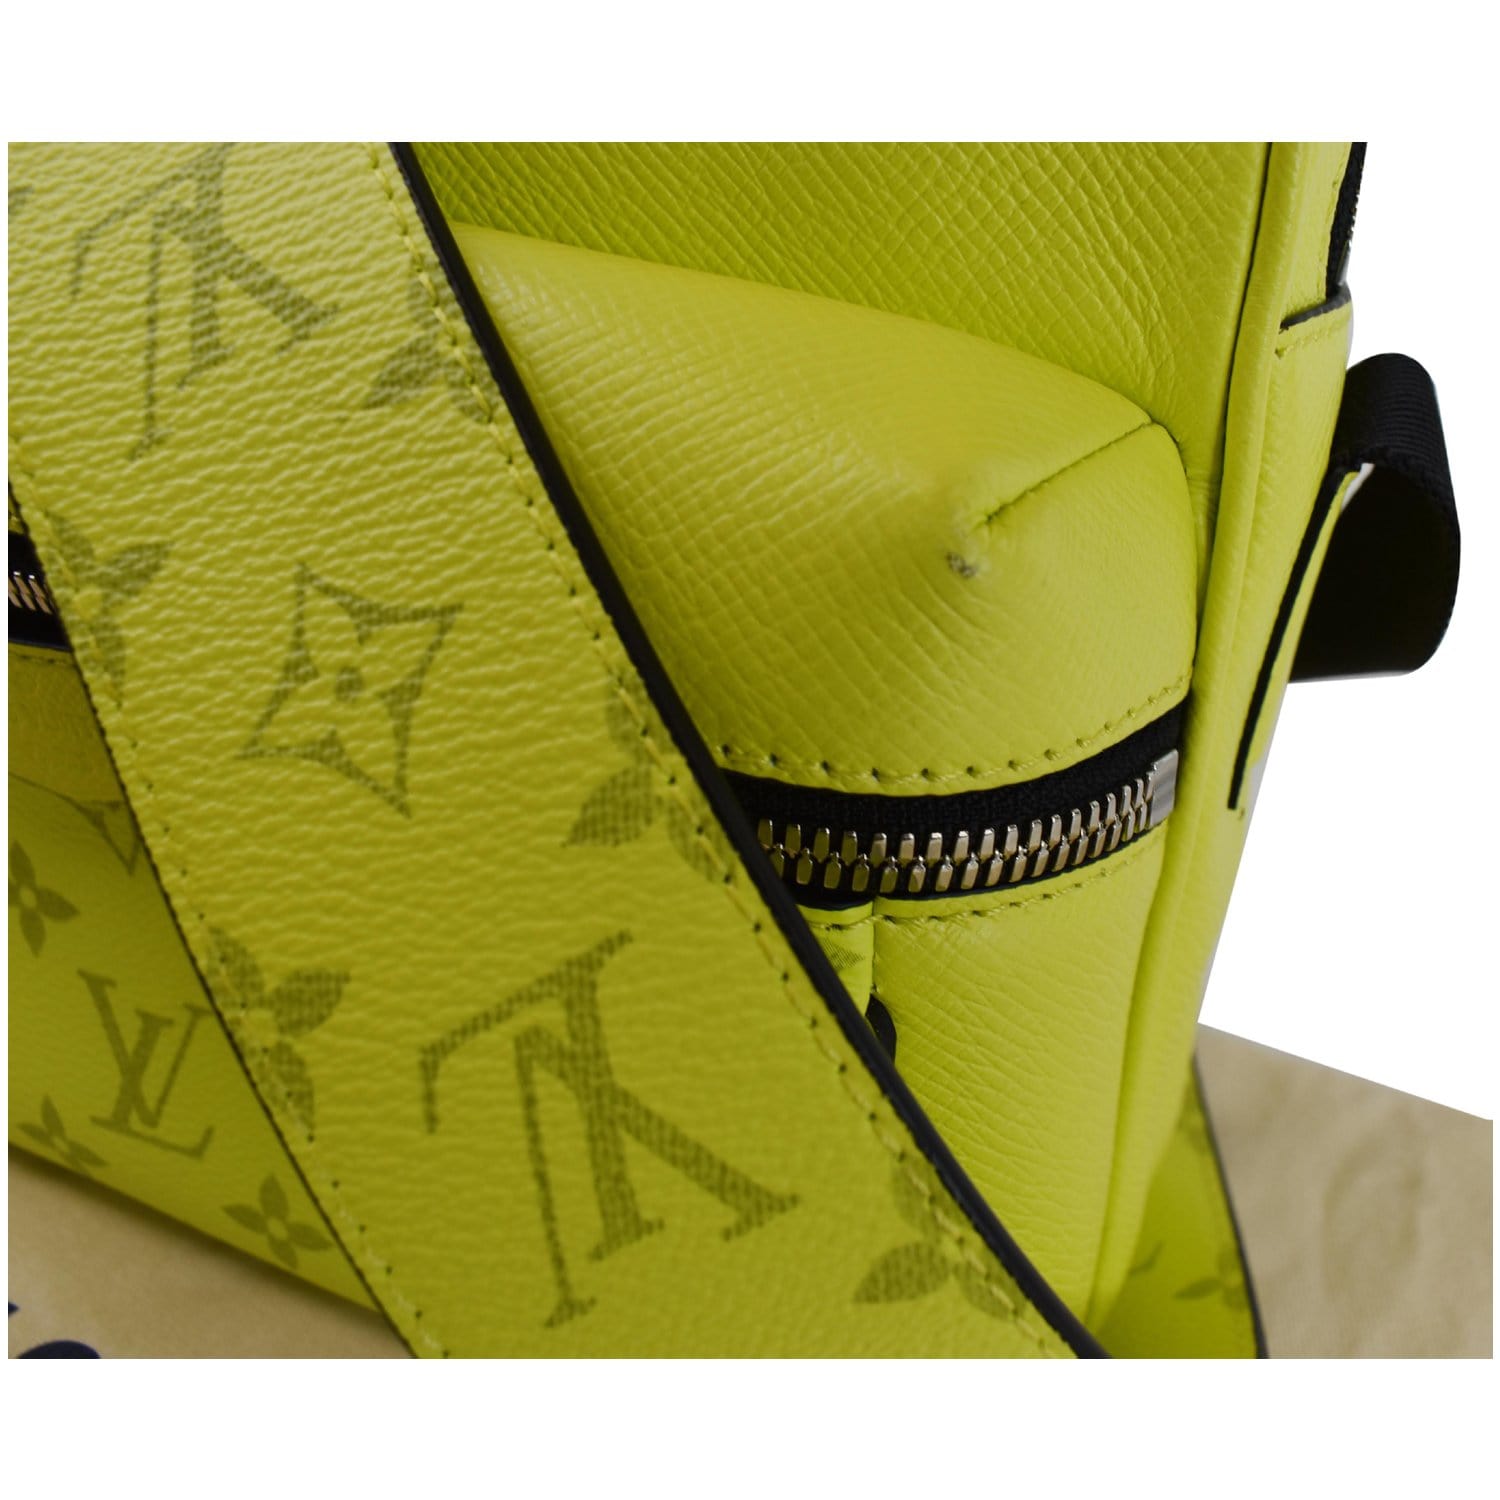 Louis Vuitton, Bags, Louis Vuitton Outdoor Neon Yellow Bag